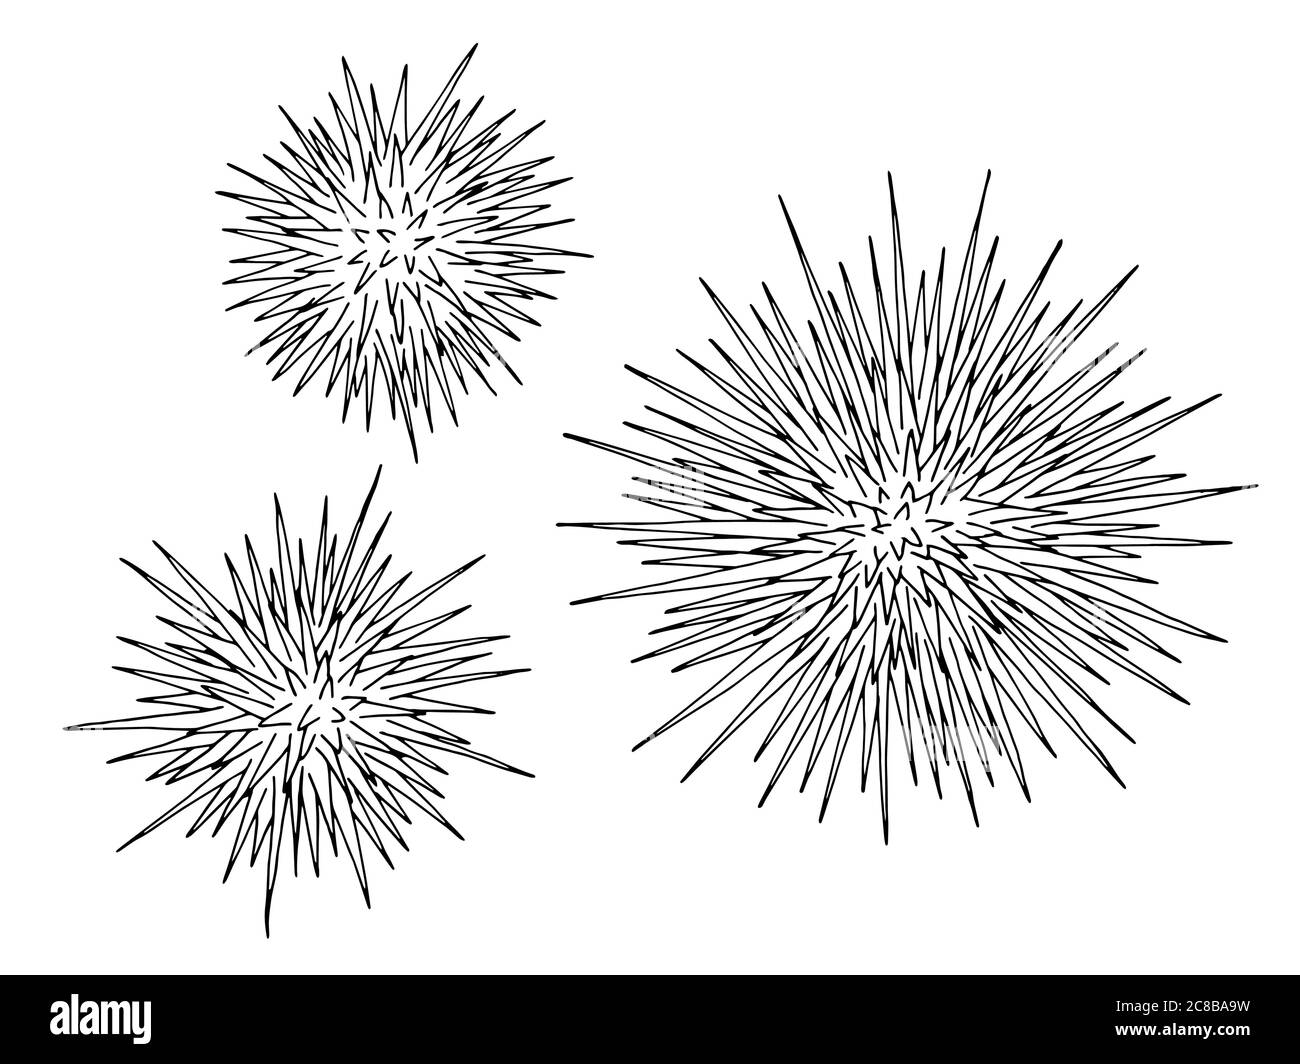 Ricci di mare echinus insieme grafico nero bianco vettore di illustrazione isolato Illustrazione Vettoriale